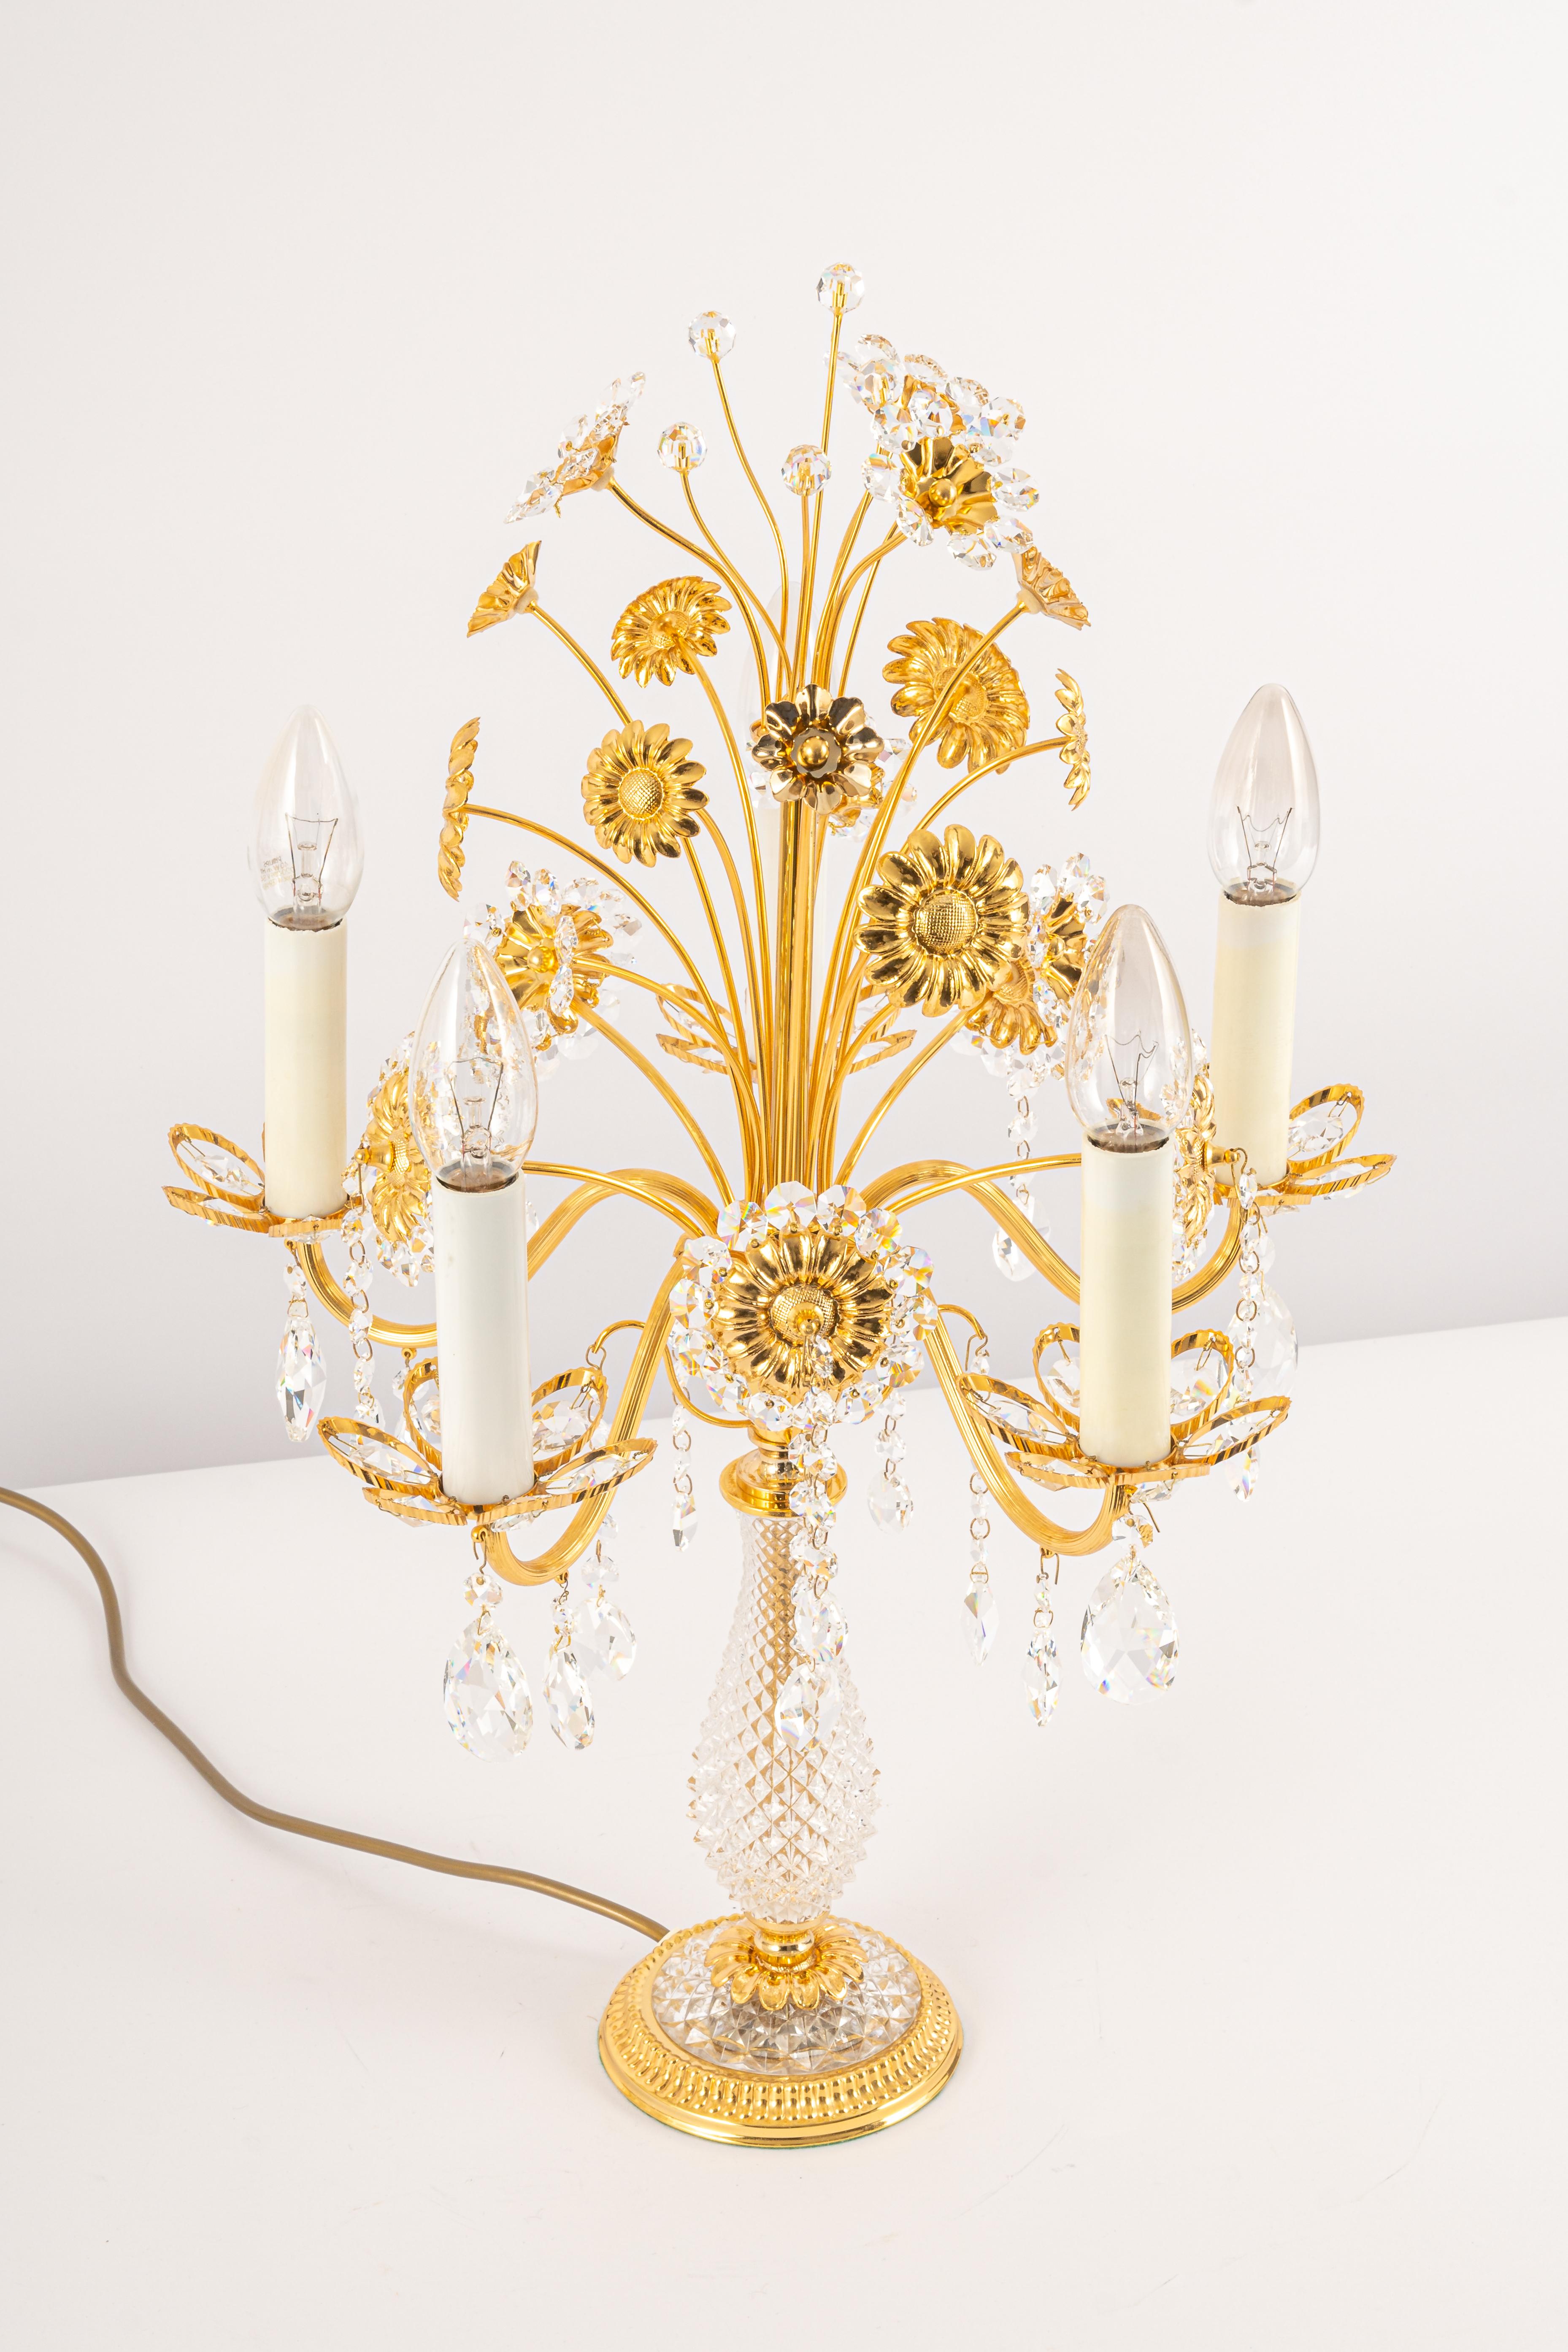 1 de 2 lampes de table étonnantes par Palwa, Allemagne, 1970
Cadre en laiton doré et verres en cristal.

Douilles : La lampe de table a besoin de 5 petites ampoules E14 pour s'éclairer.
Les ampoules ne sont pas incluses. Il est possible